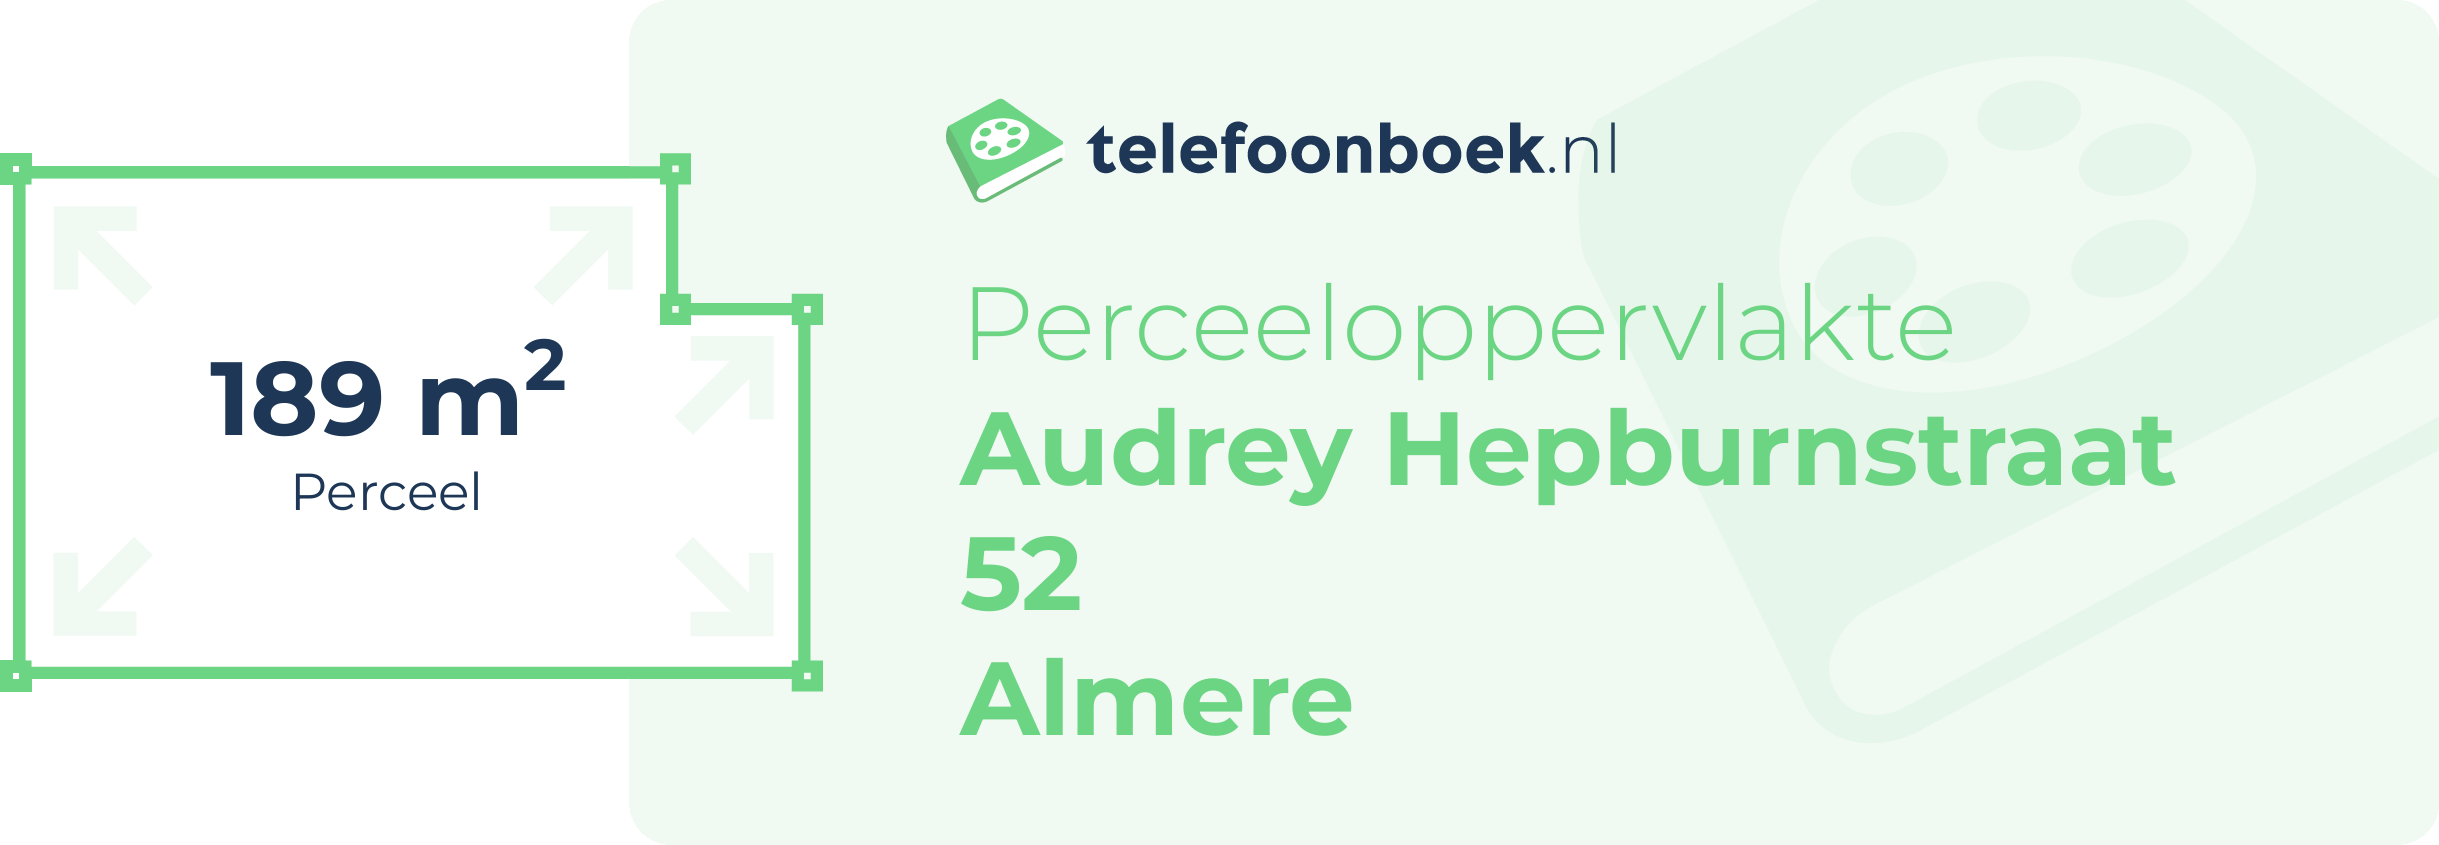 Perceeloppervlakte Audrey Hepburnstraat 52 Almere